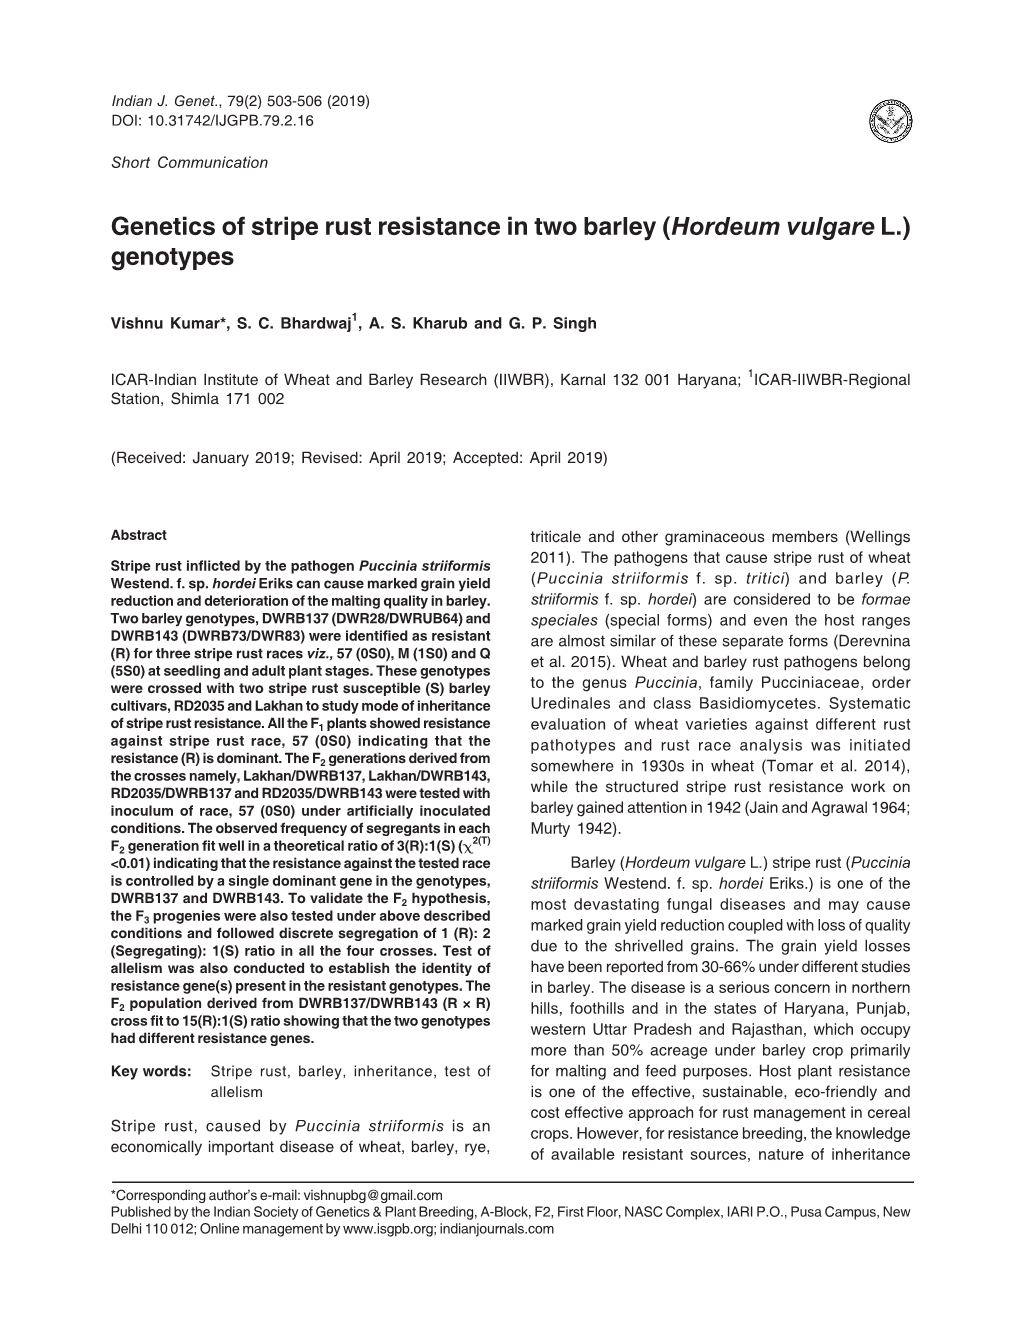 Genetics of Stripe Rust Resistance in Two Barley (Hordeum Vulgare L.) Genotypes